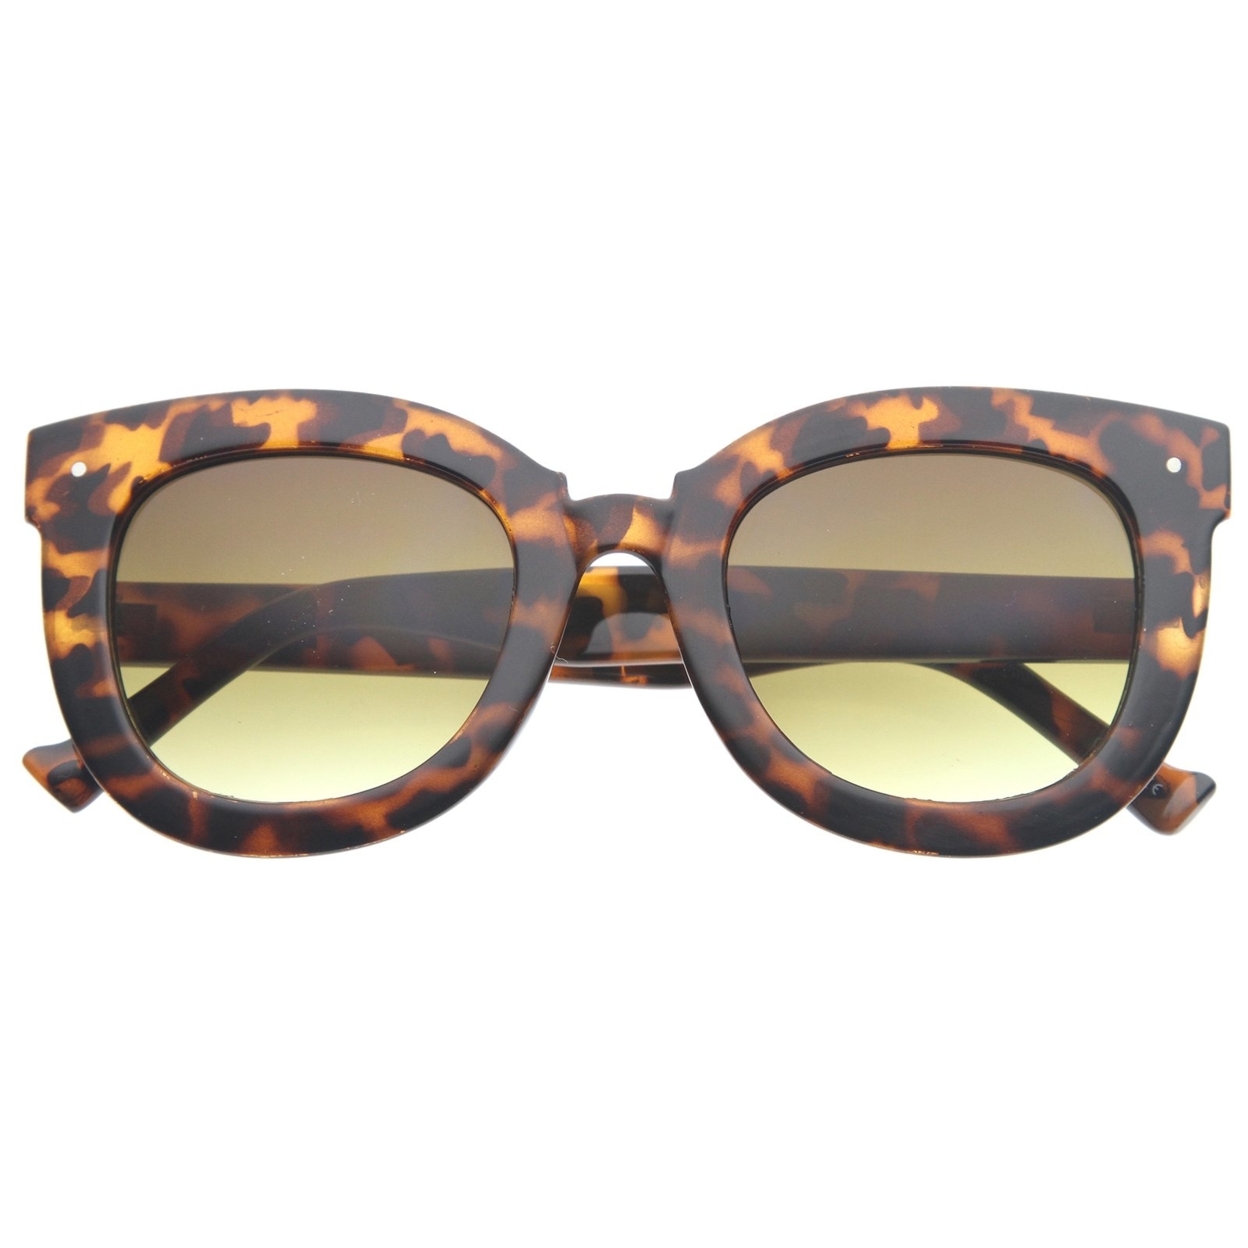 Womens Oversized Butterfly Horn Rimmed Round Cat Eye Sunglasses 67mm - Tortoise / Amber